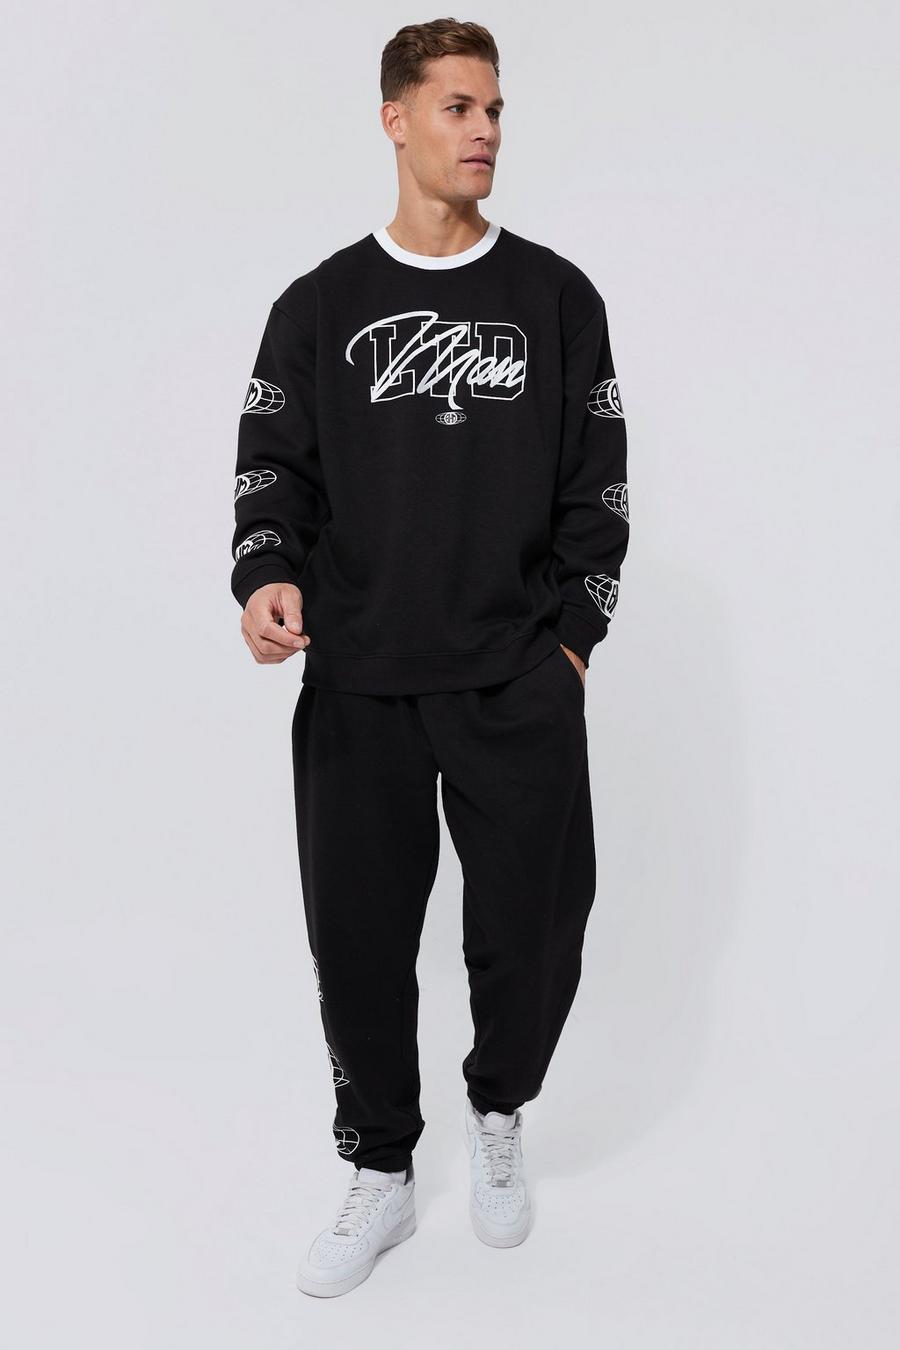 Black svart Tall - Ltd Edition Baggy träningsoverall med sweatshirt